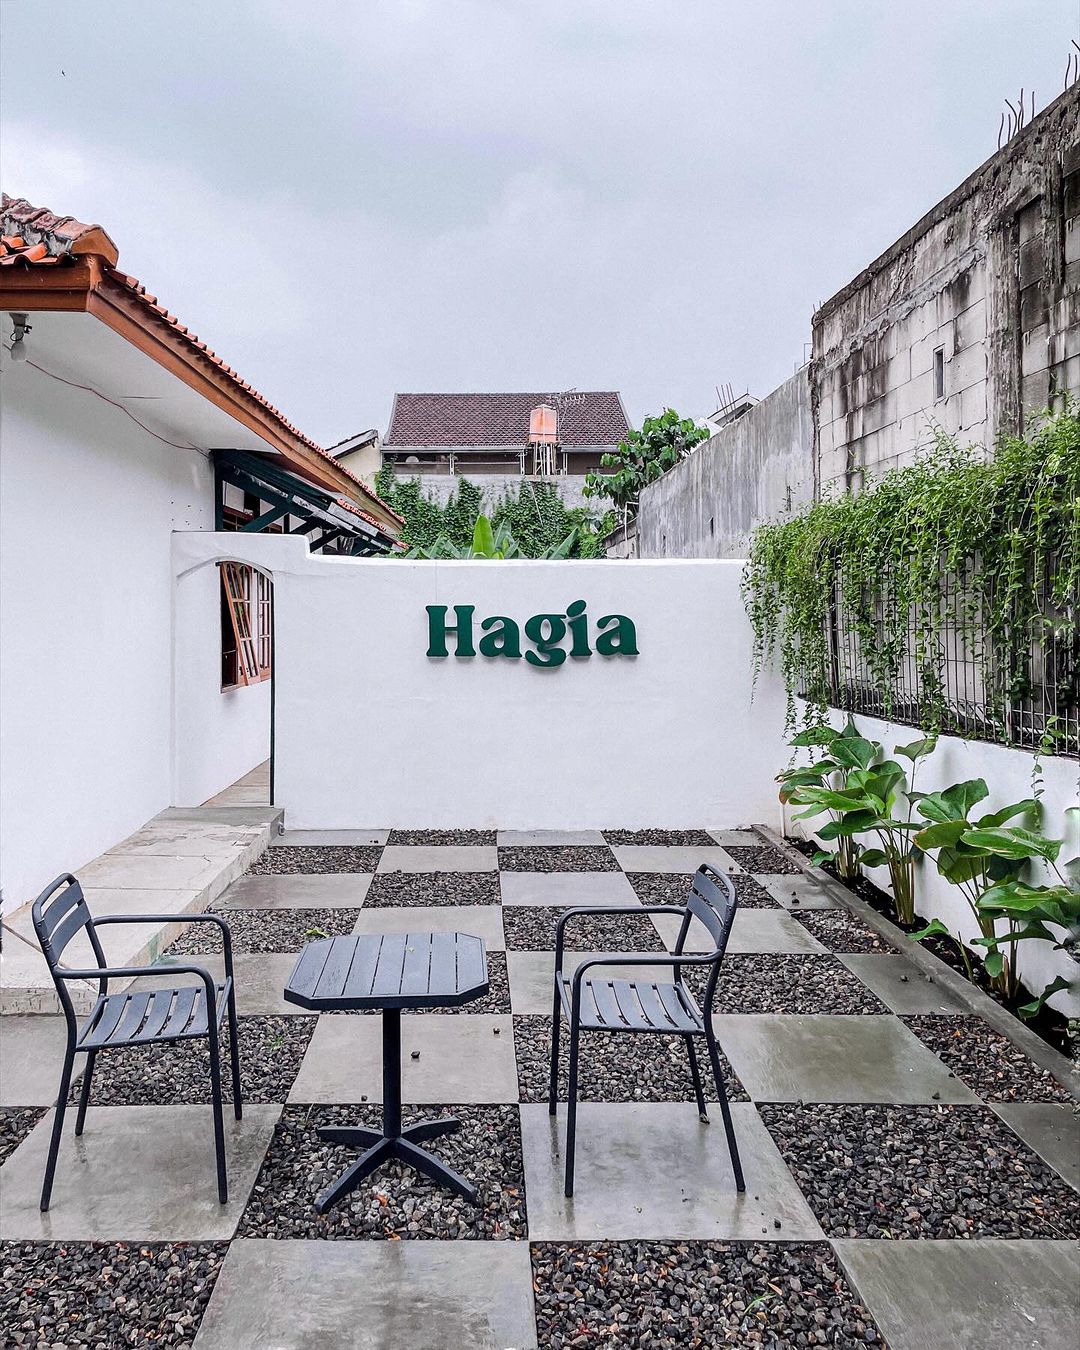 Review Kopi Hagia Bekasi Image From @m_azriansyah